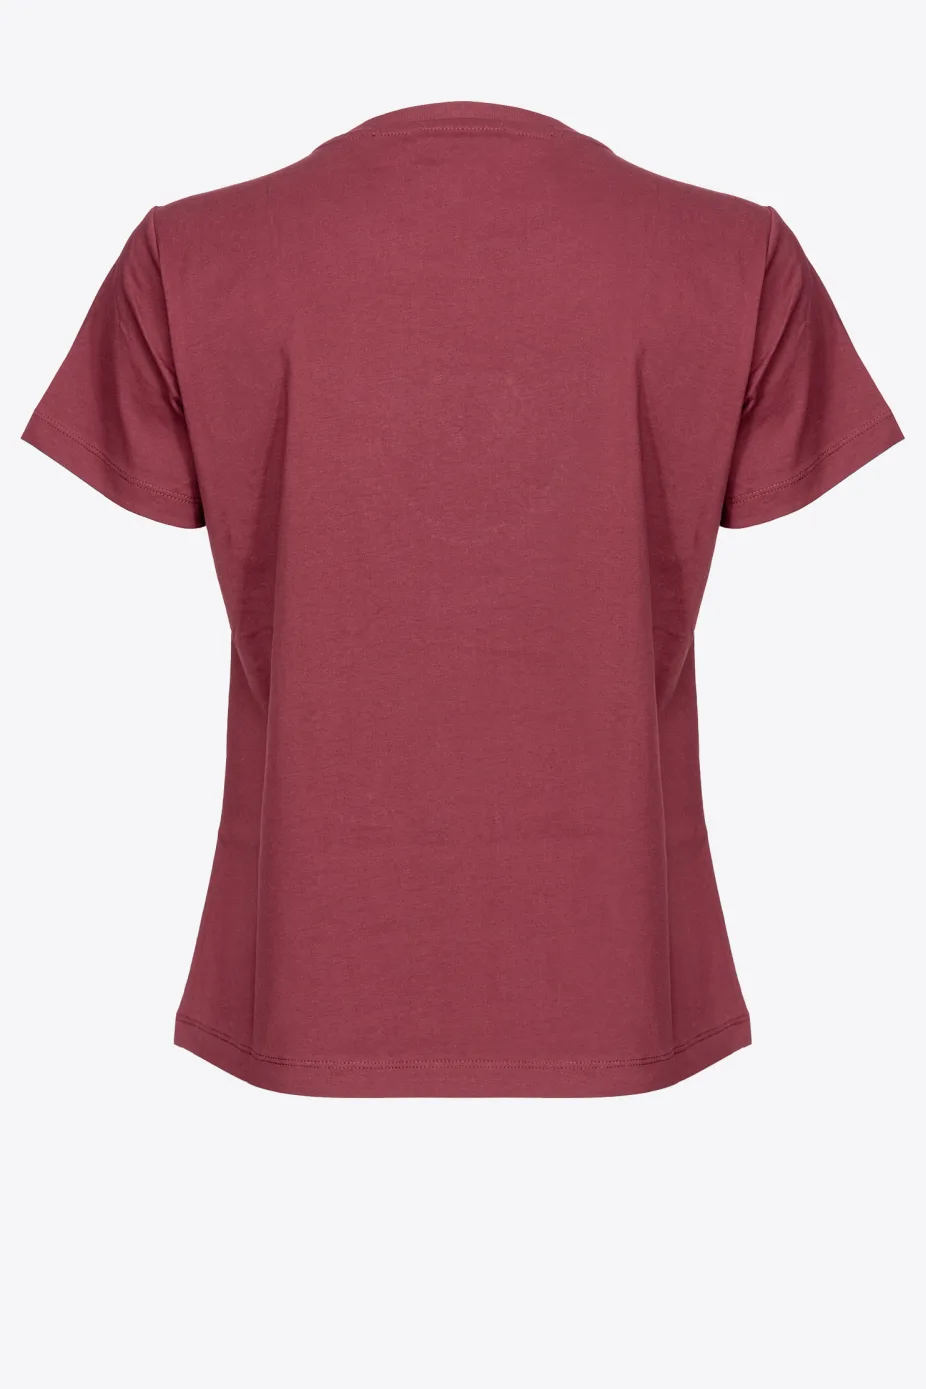 T-Shirt con Ricamo Pinko / Bordeaux - Ideal Moda